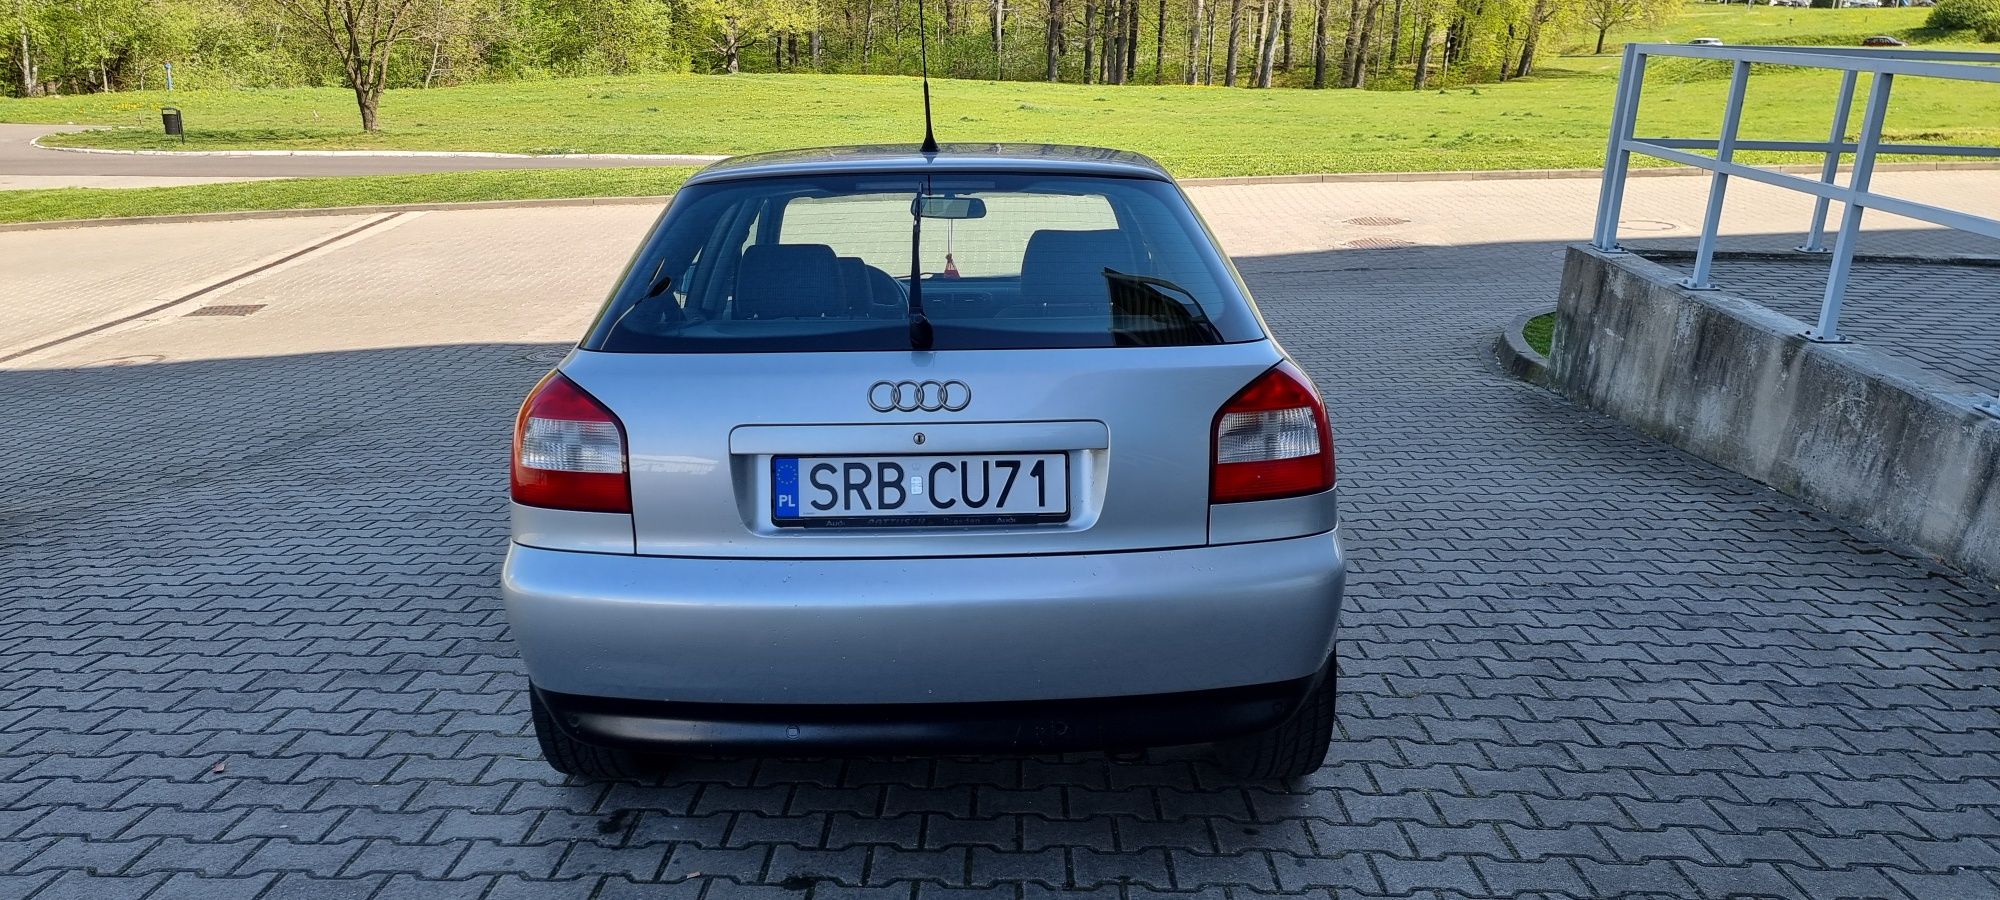 Audi A3 1.6 Mpi 102 ps z 2003 roku Lift 5 dzwi Zapraszam